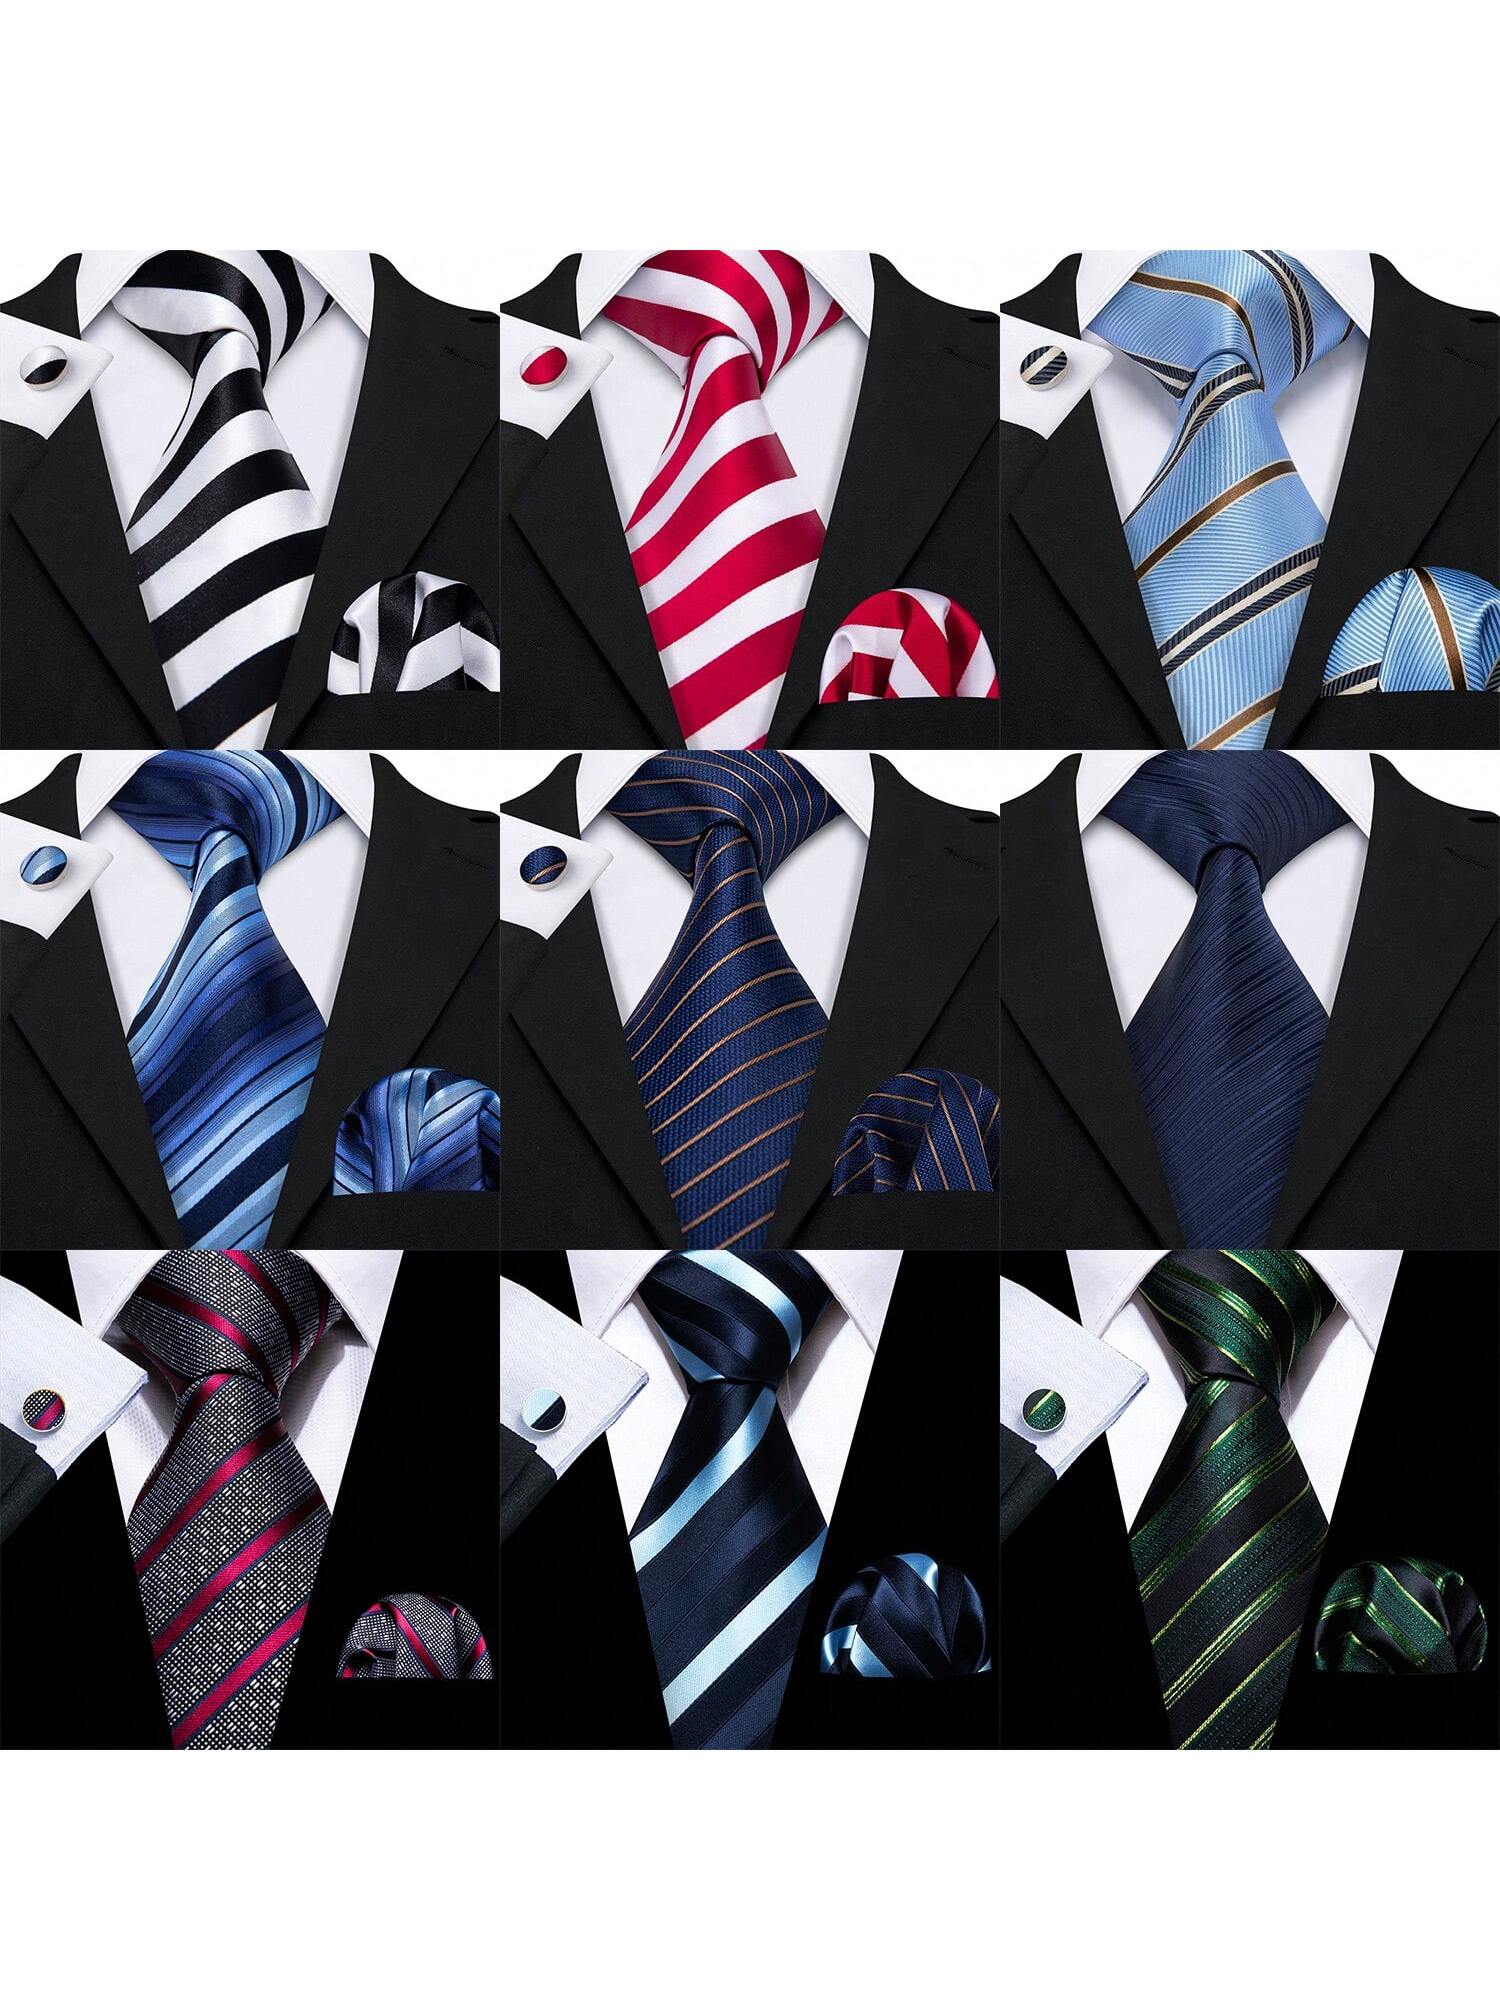 Дизайнерский мужской галстук Barry Wang, синие полосы